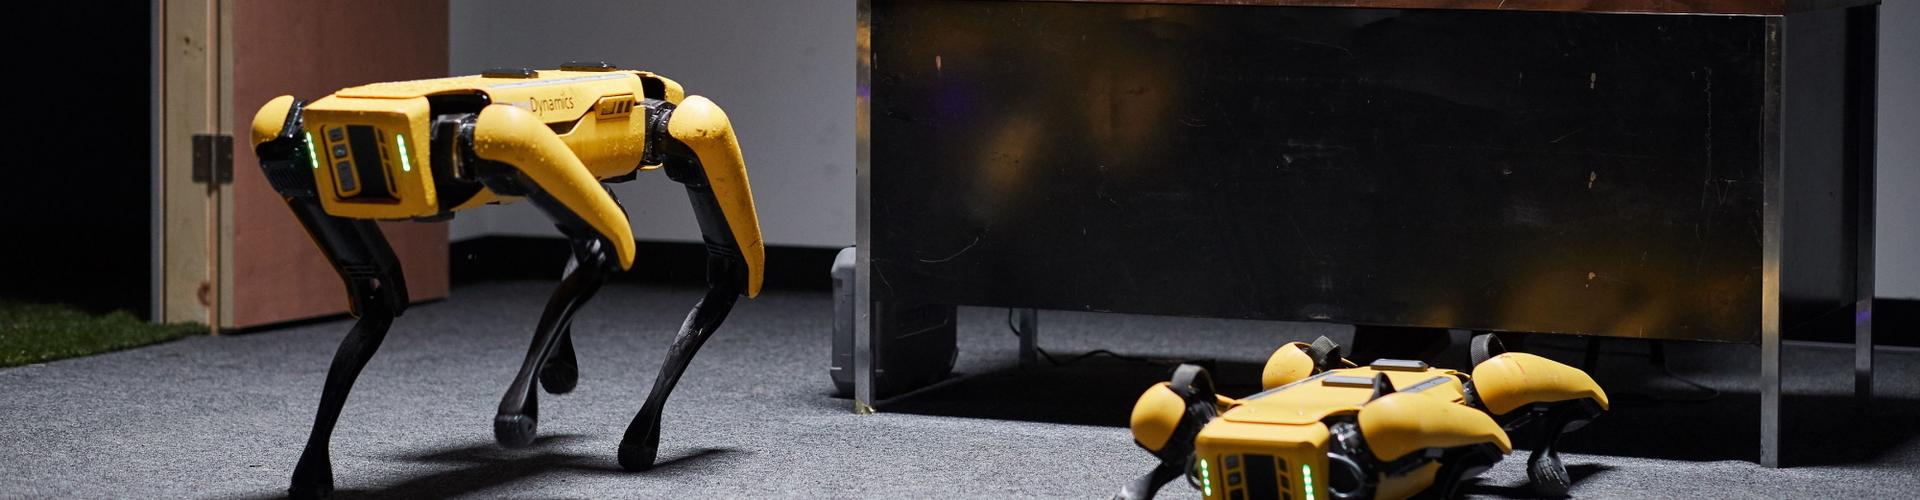 Spot, czworonożny robo-pies firmy Boston Dynamics przyjechał do Polski